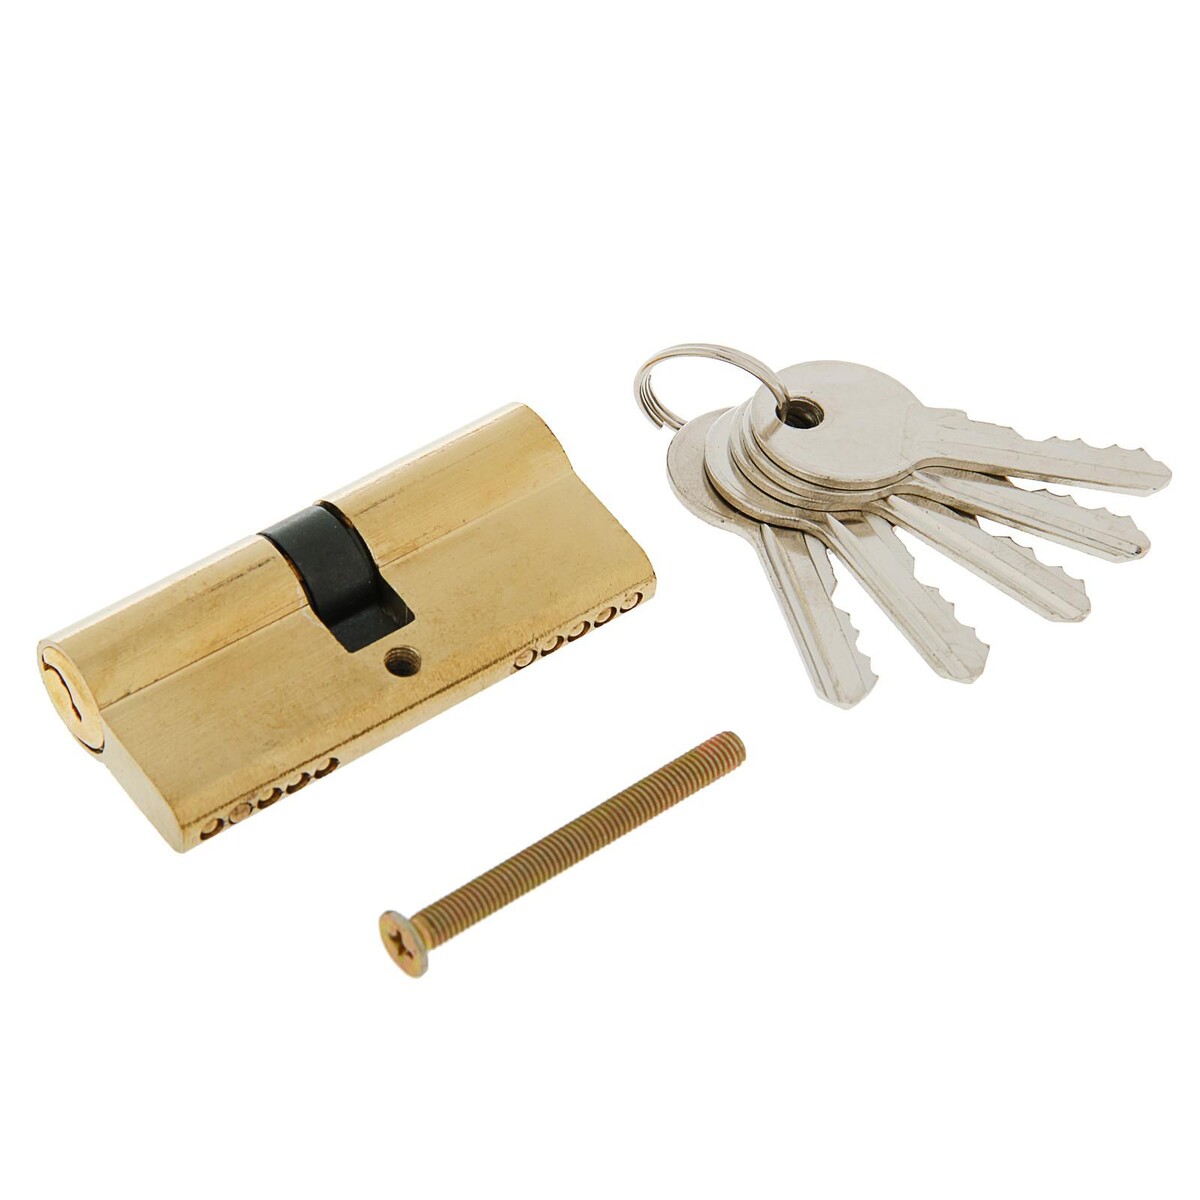 Цилиндровый механизм, 70 мм, английский ключ, 5 ключей, цвет золото замок навесной аллюр вс1ч 360 цилиндровый 5 ключей